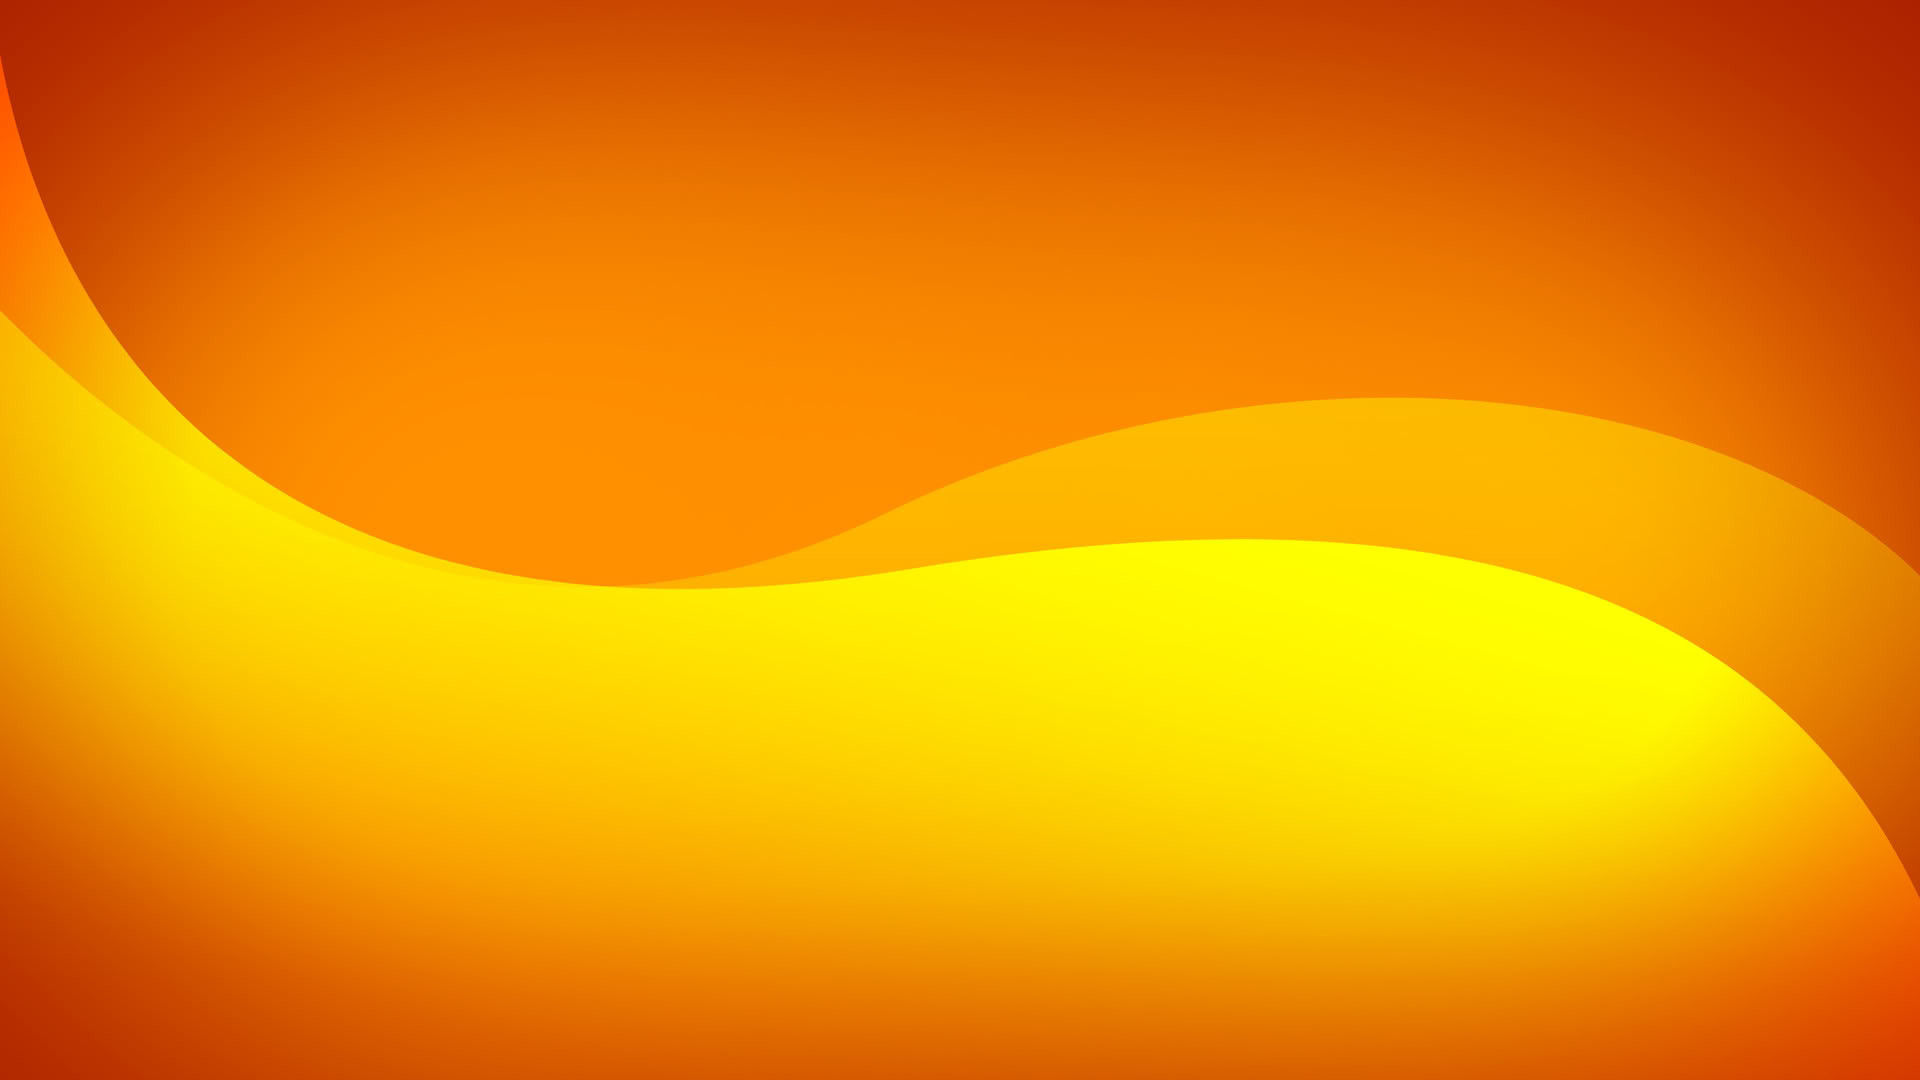 Explore Orange Wallpaper, Orange Orange, and more!